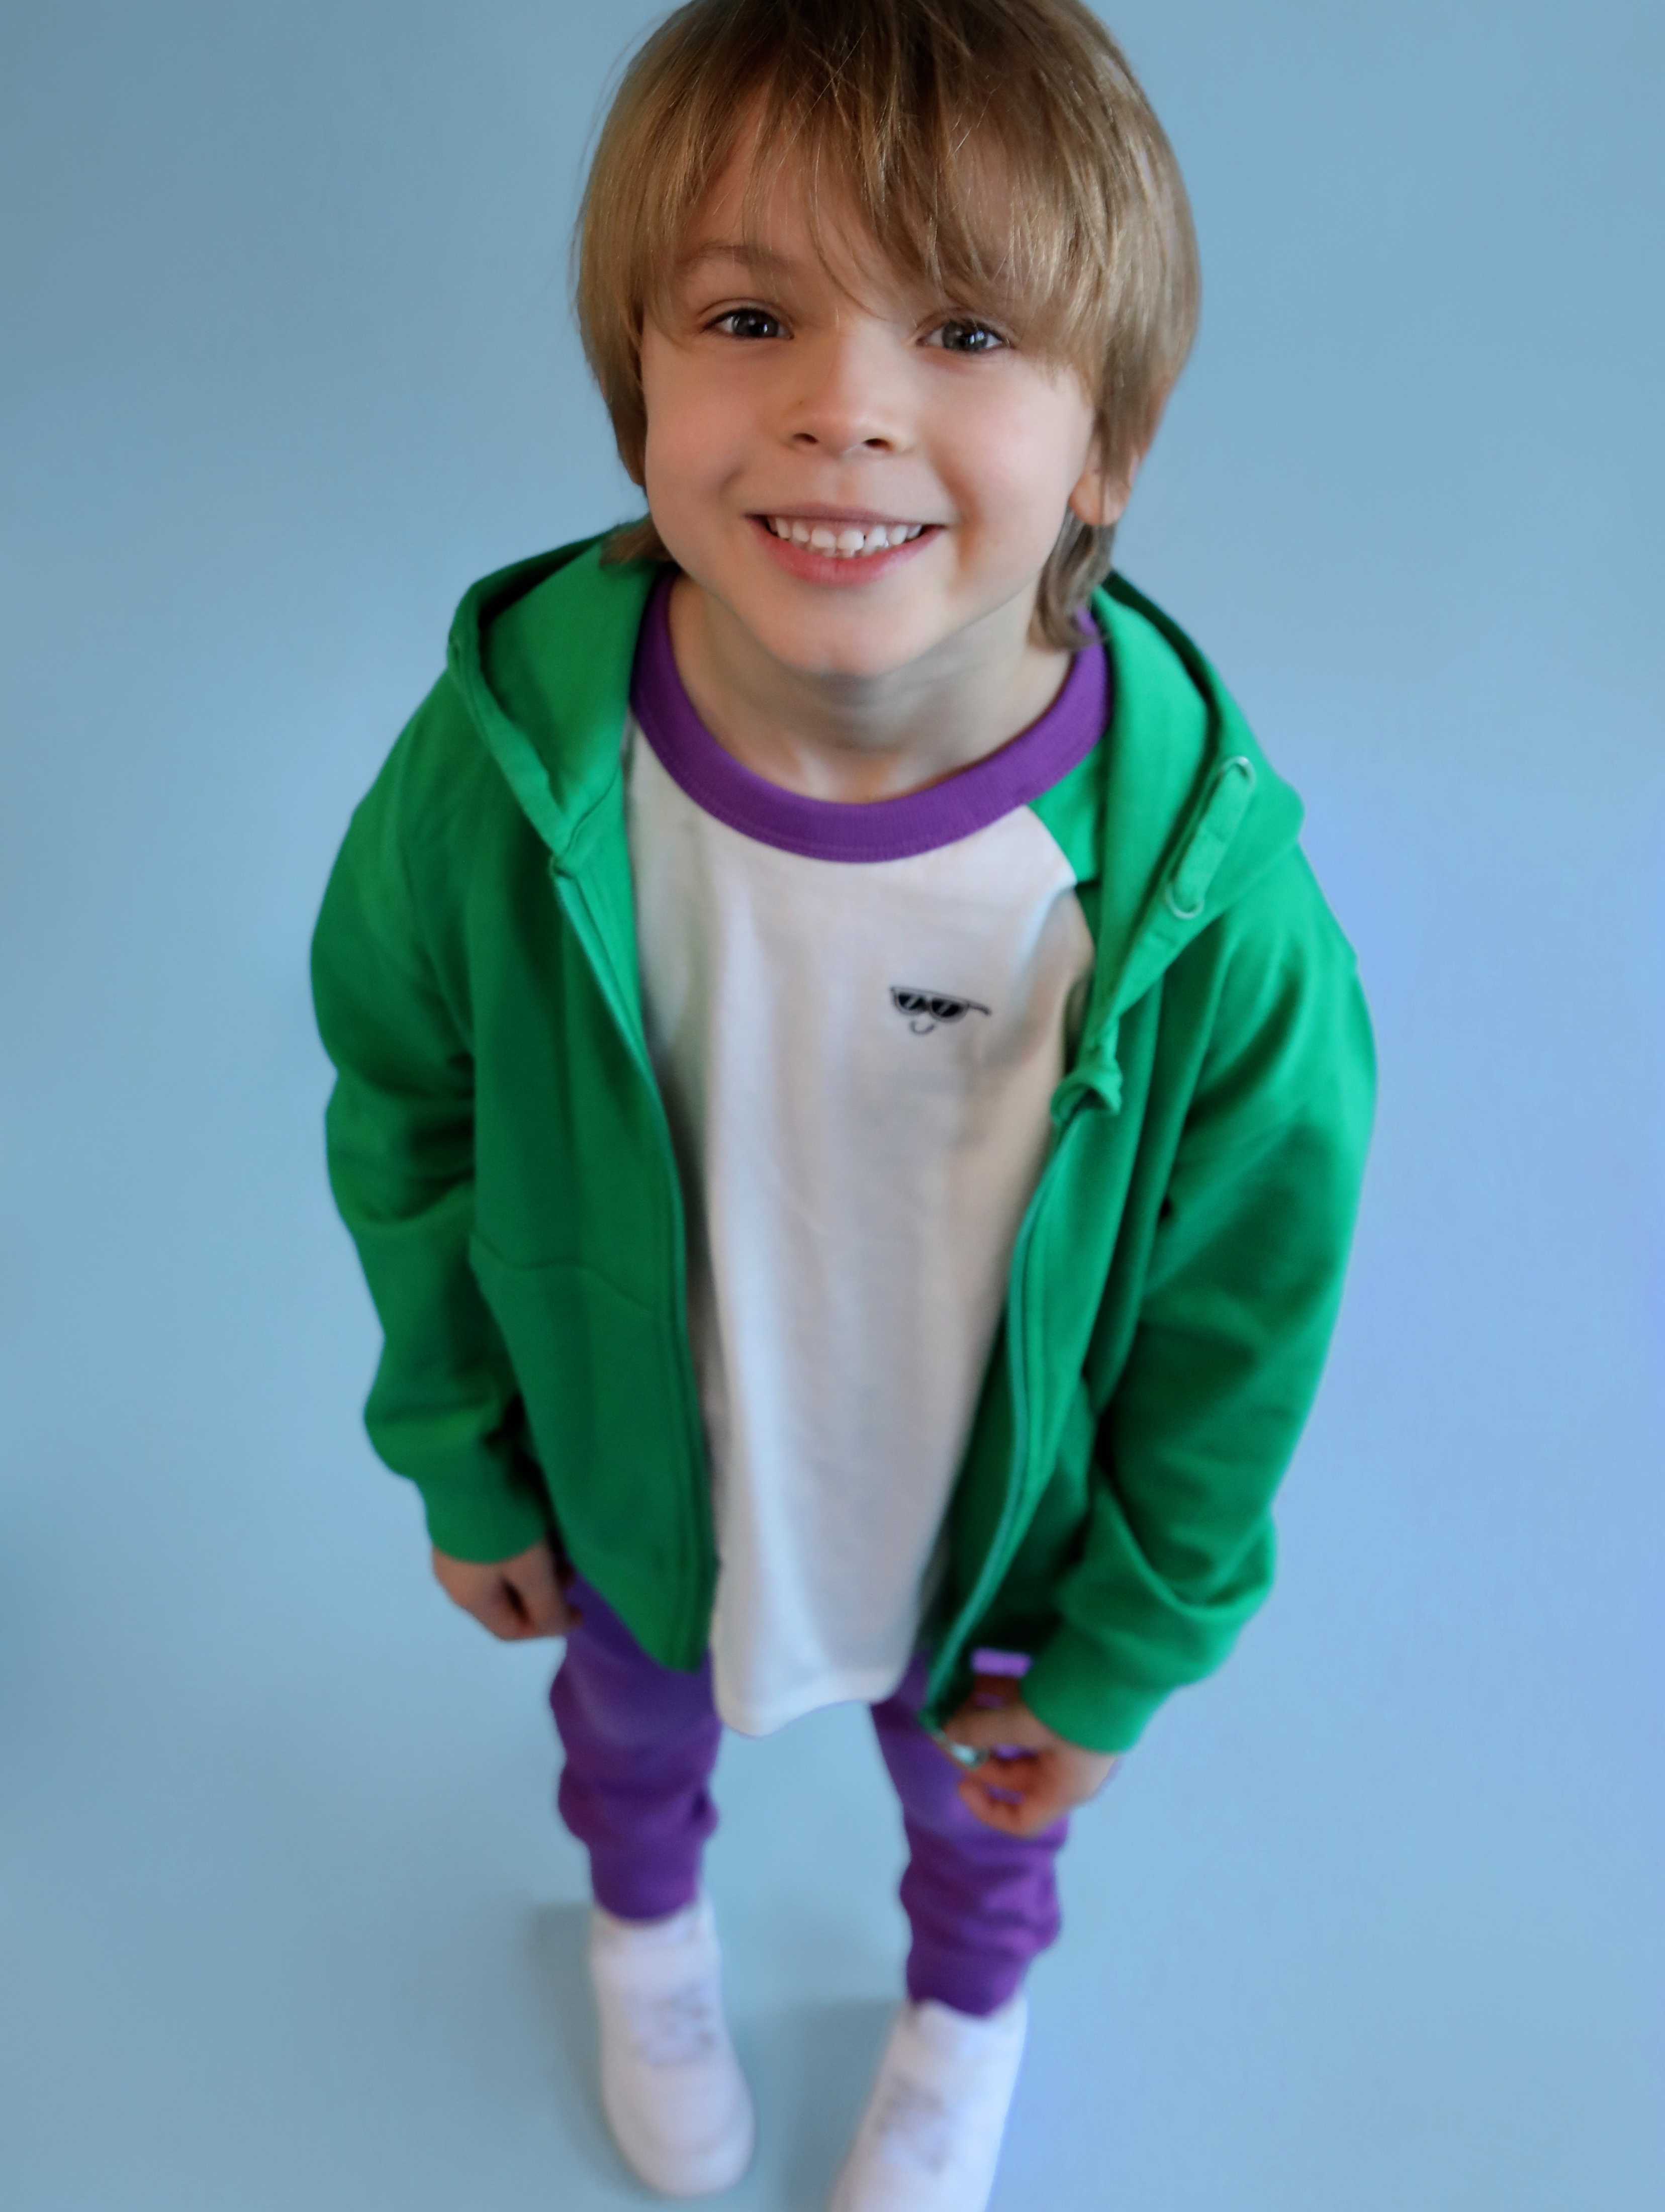 Zielona dresowa bluza z kapturem dla dziecka - 5.10.15.